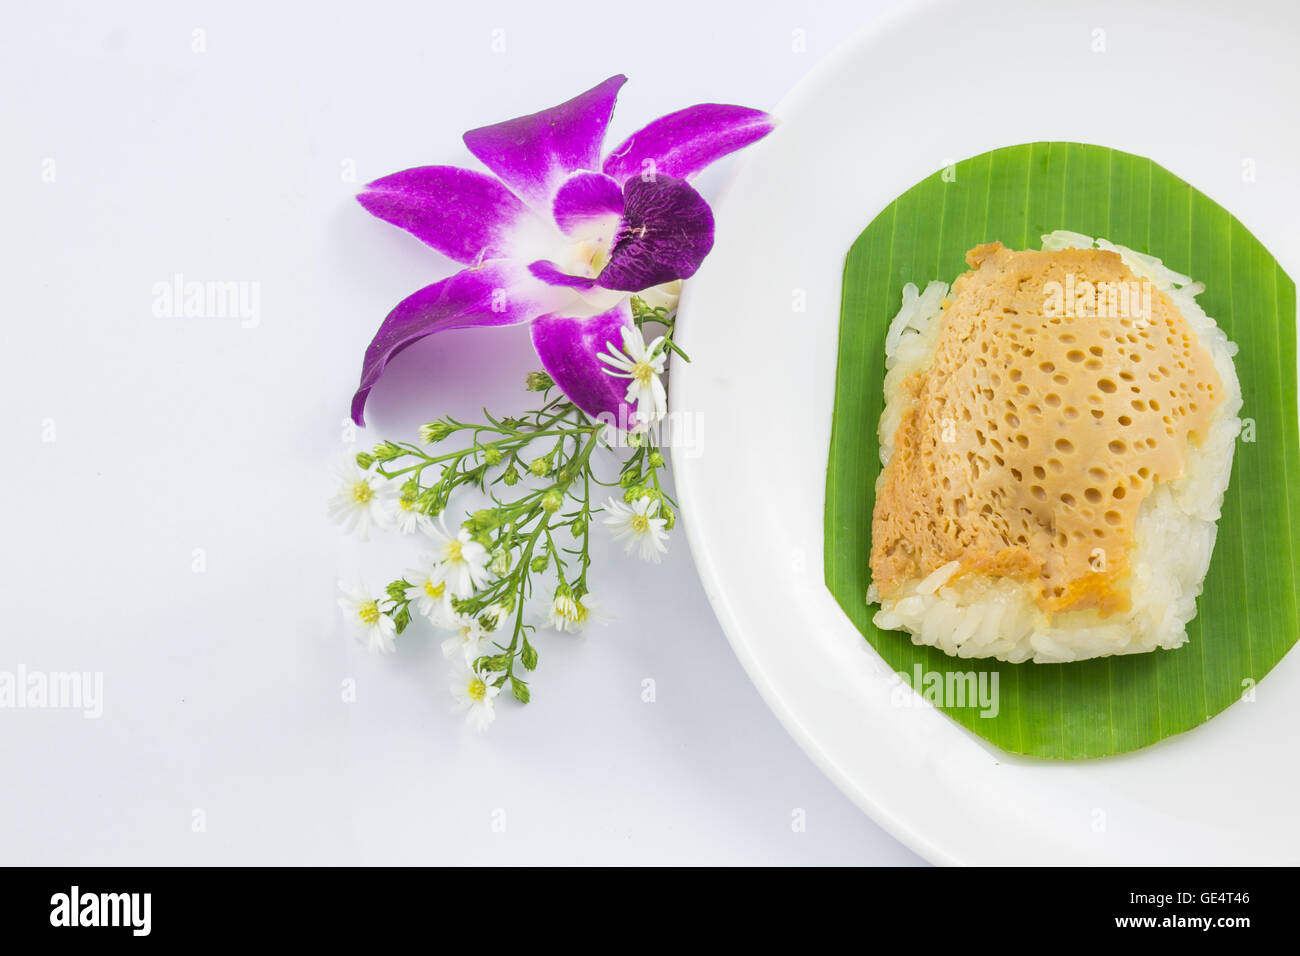 Le riz gluant cuit à la vapeur avec de la crème anglaise sur des feuilles de bananier et plat d'orchidée, fleur, riz collant, sucré dessert sucré thaïlandais, original Banque D'Images